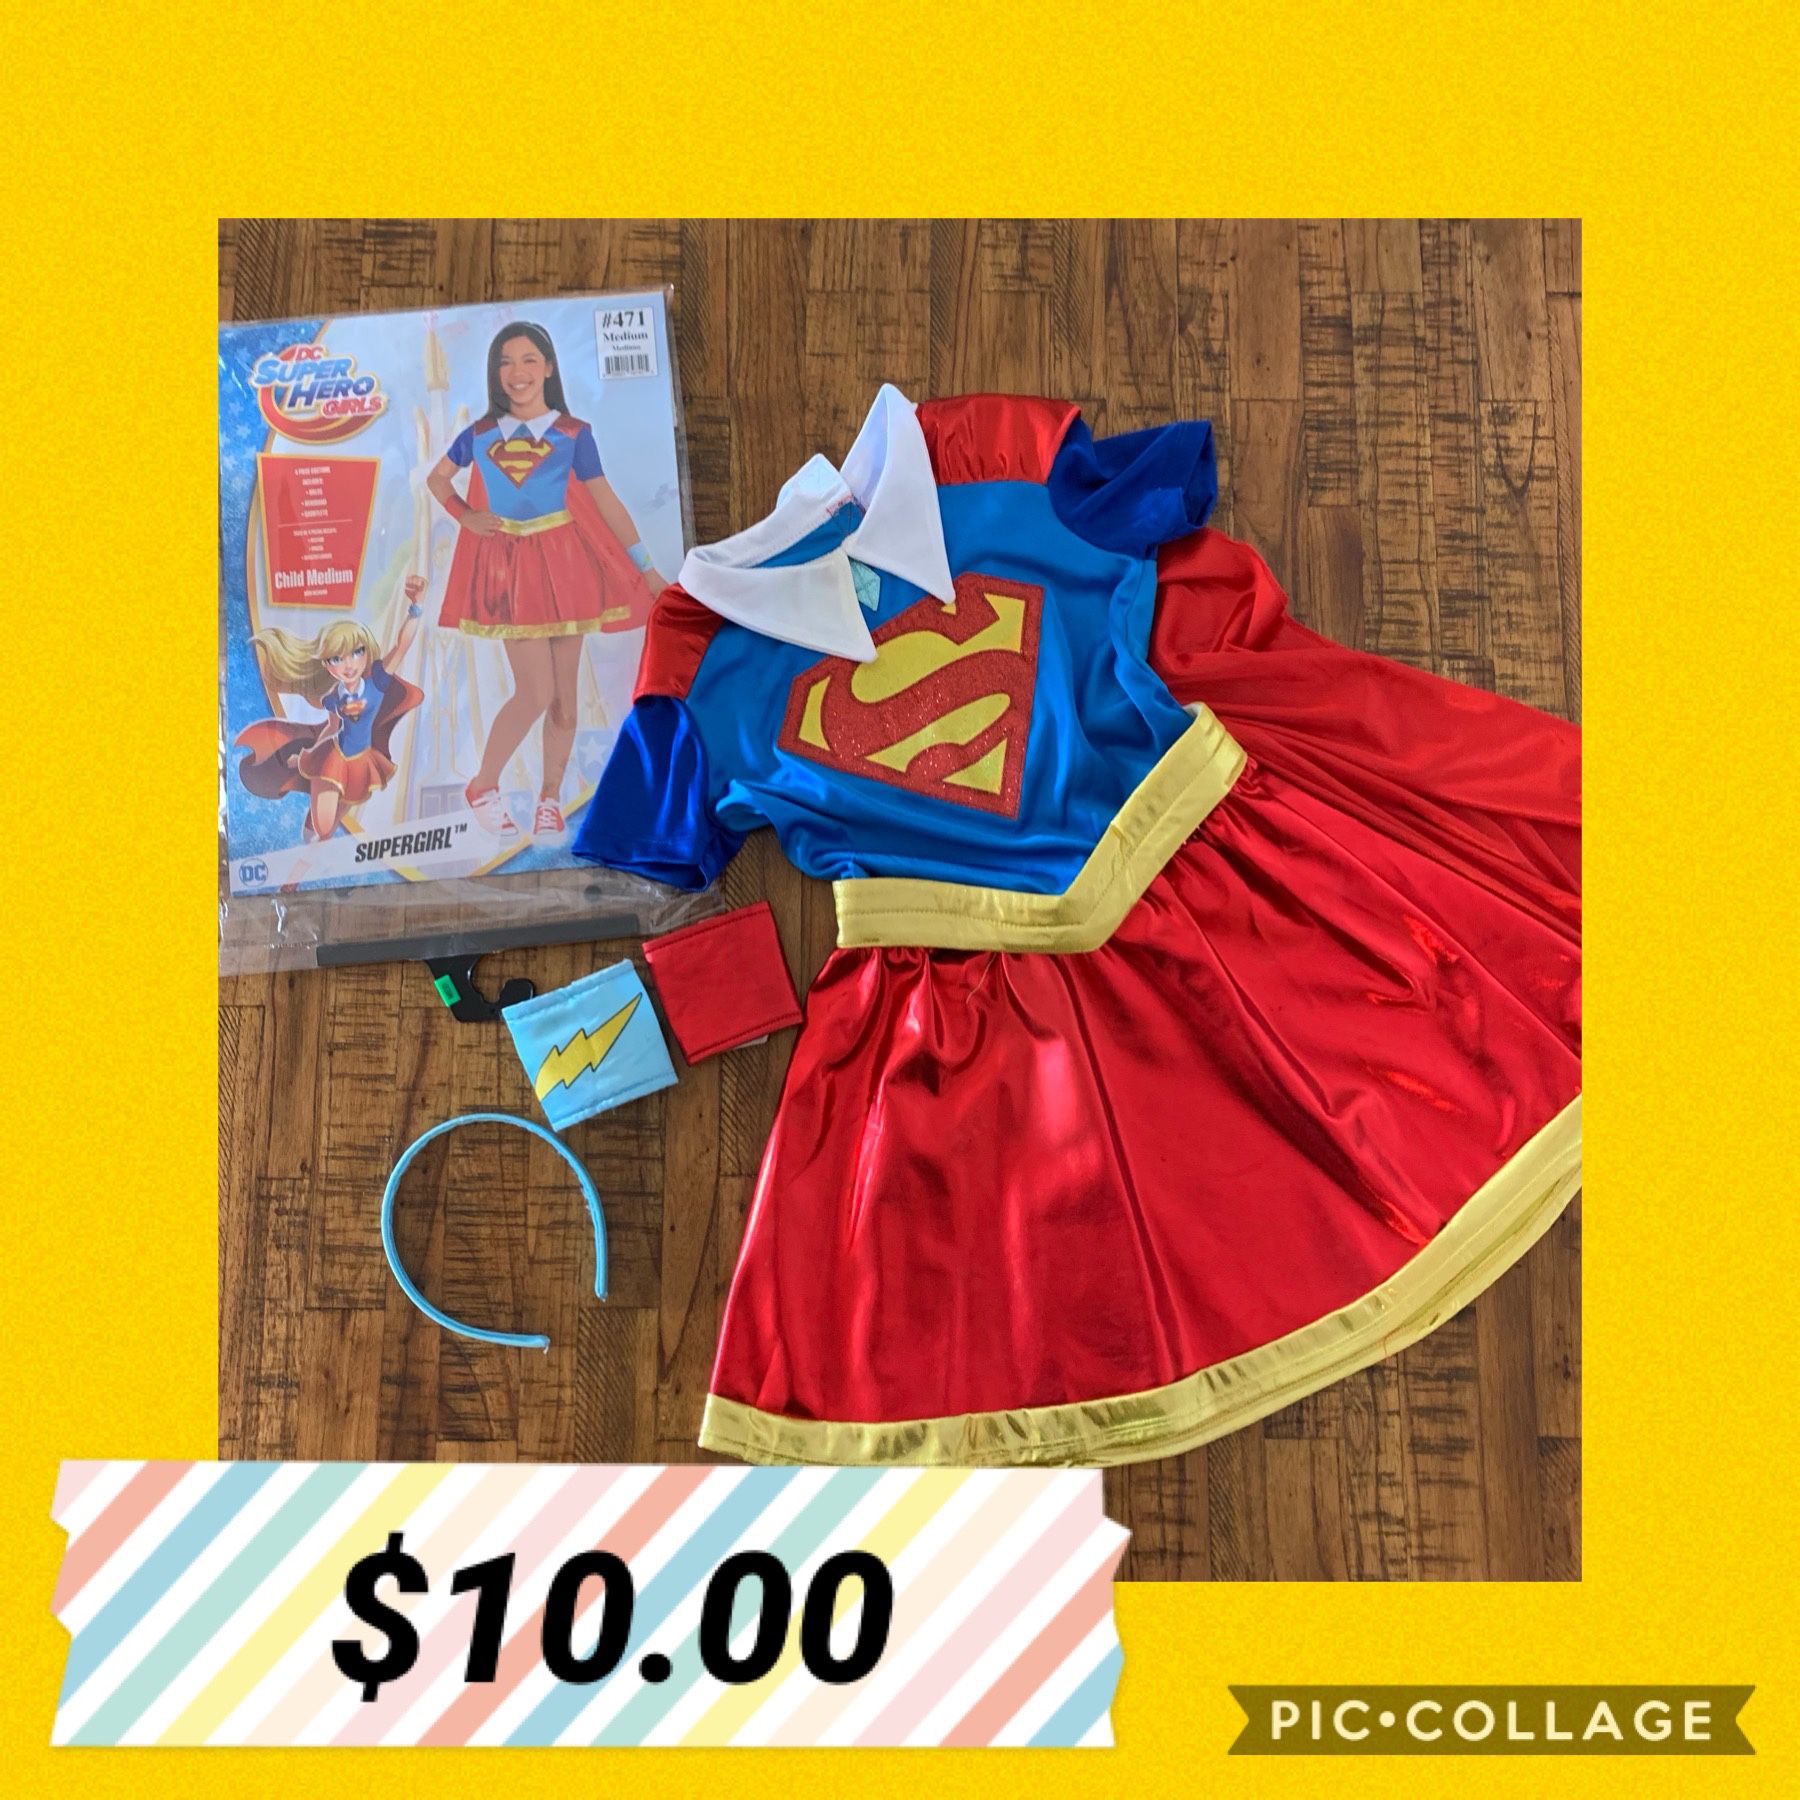 supergirl costume. size medium.$10.00